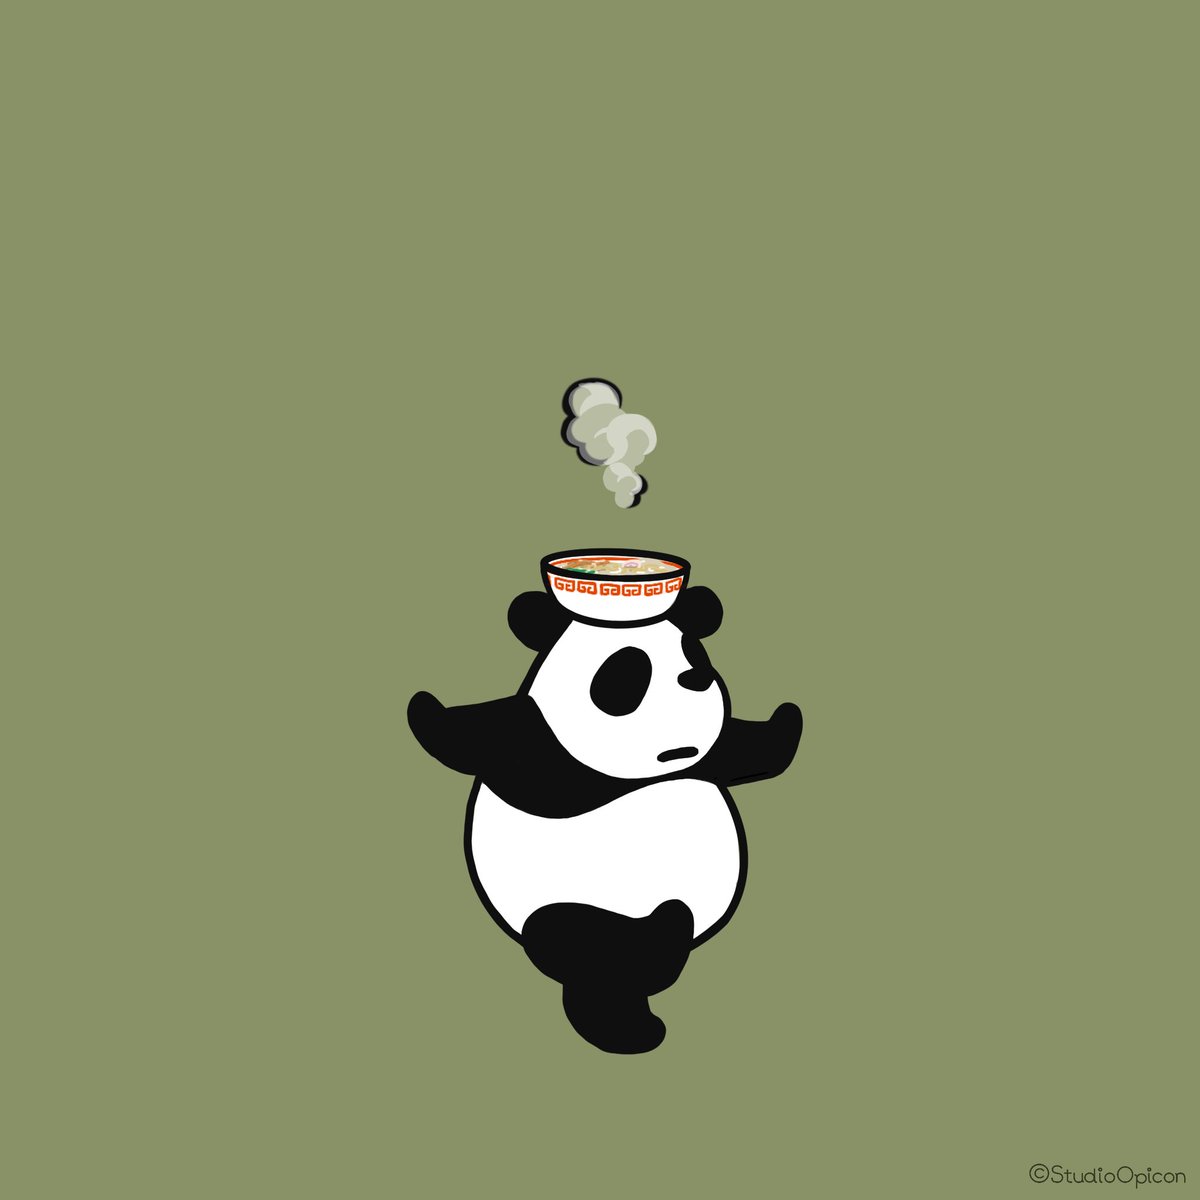 Twitter 上的 Studioopicon 出前パンダ イラスト アート 絵 キャラクター パンダ 出前 デリバリー ラーメン 動物イラスト 和み系キャラ ゆるいイラスト Illustration Art Drawing Character Panda Delivery Ramen Noodle Animalillustration